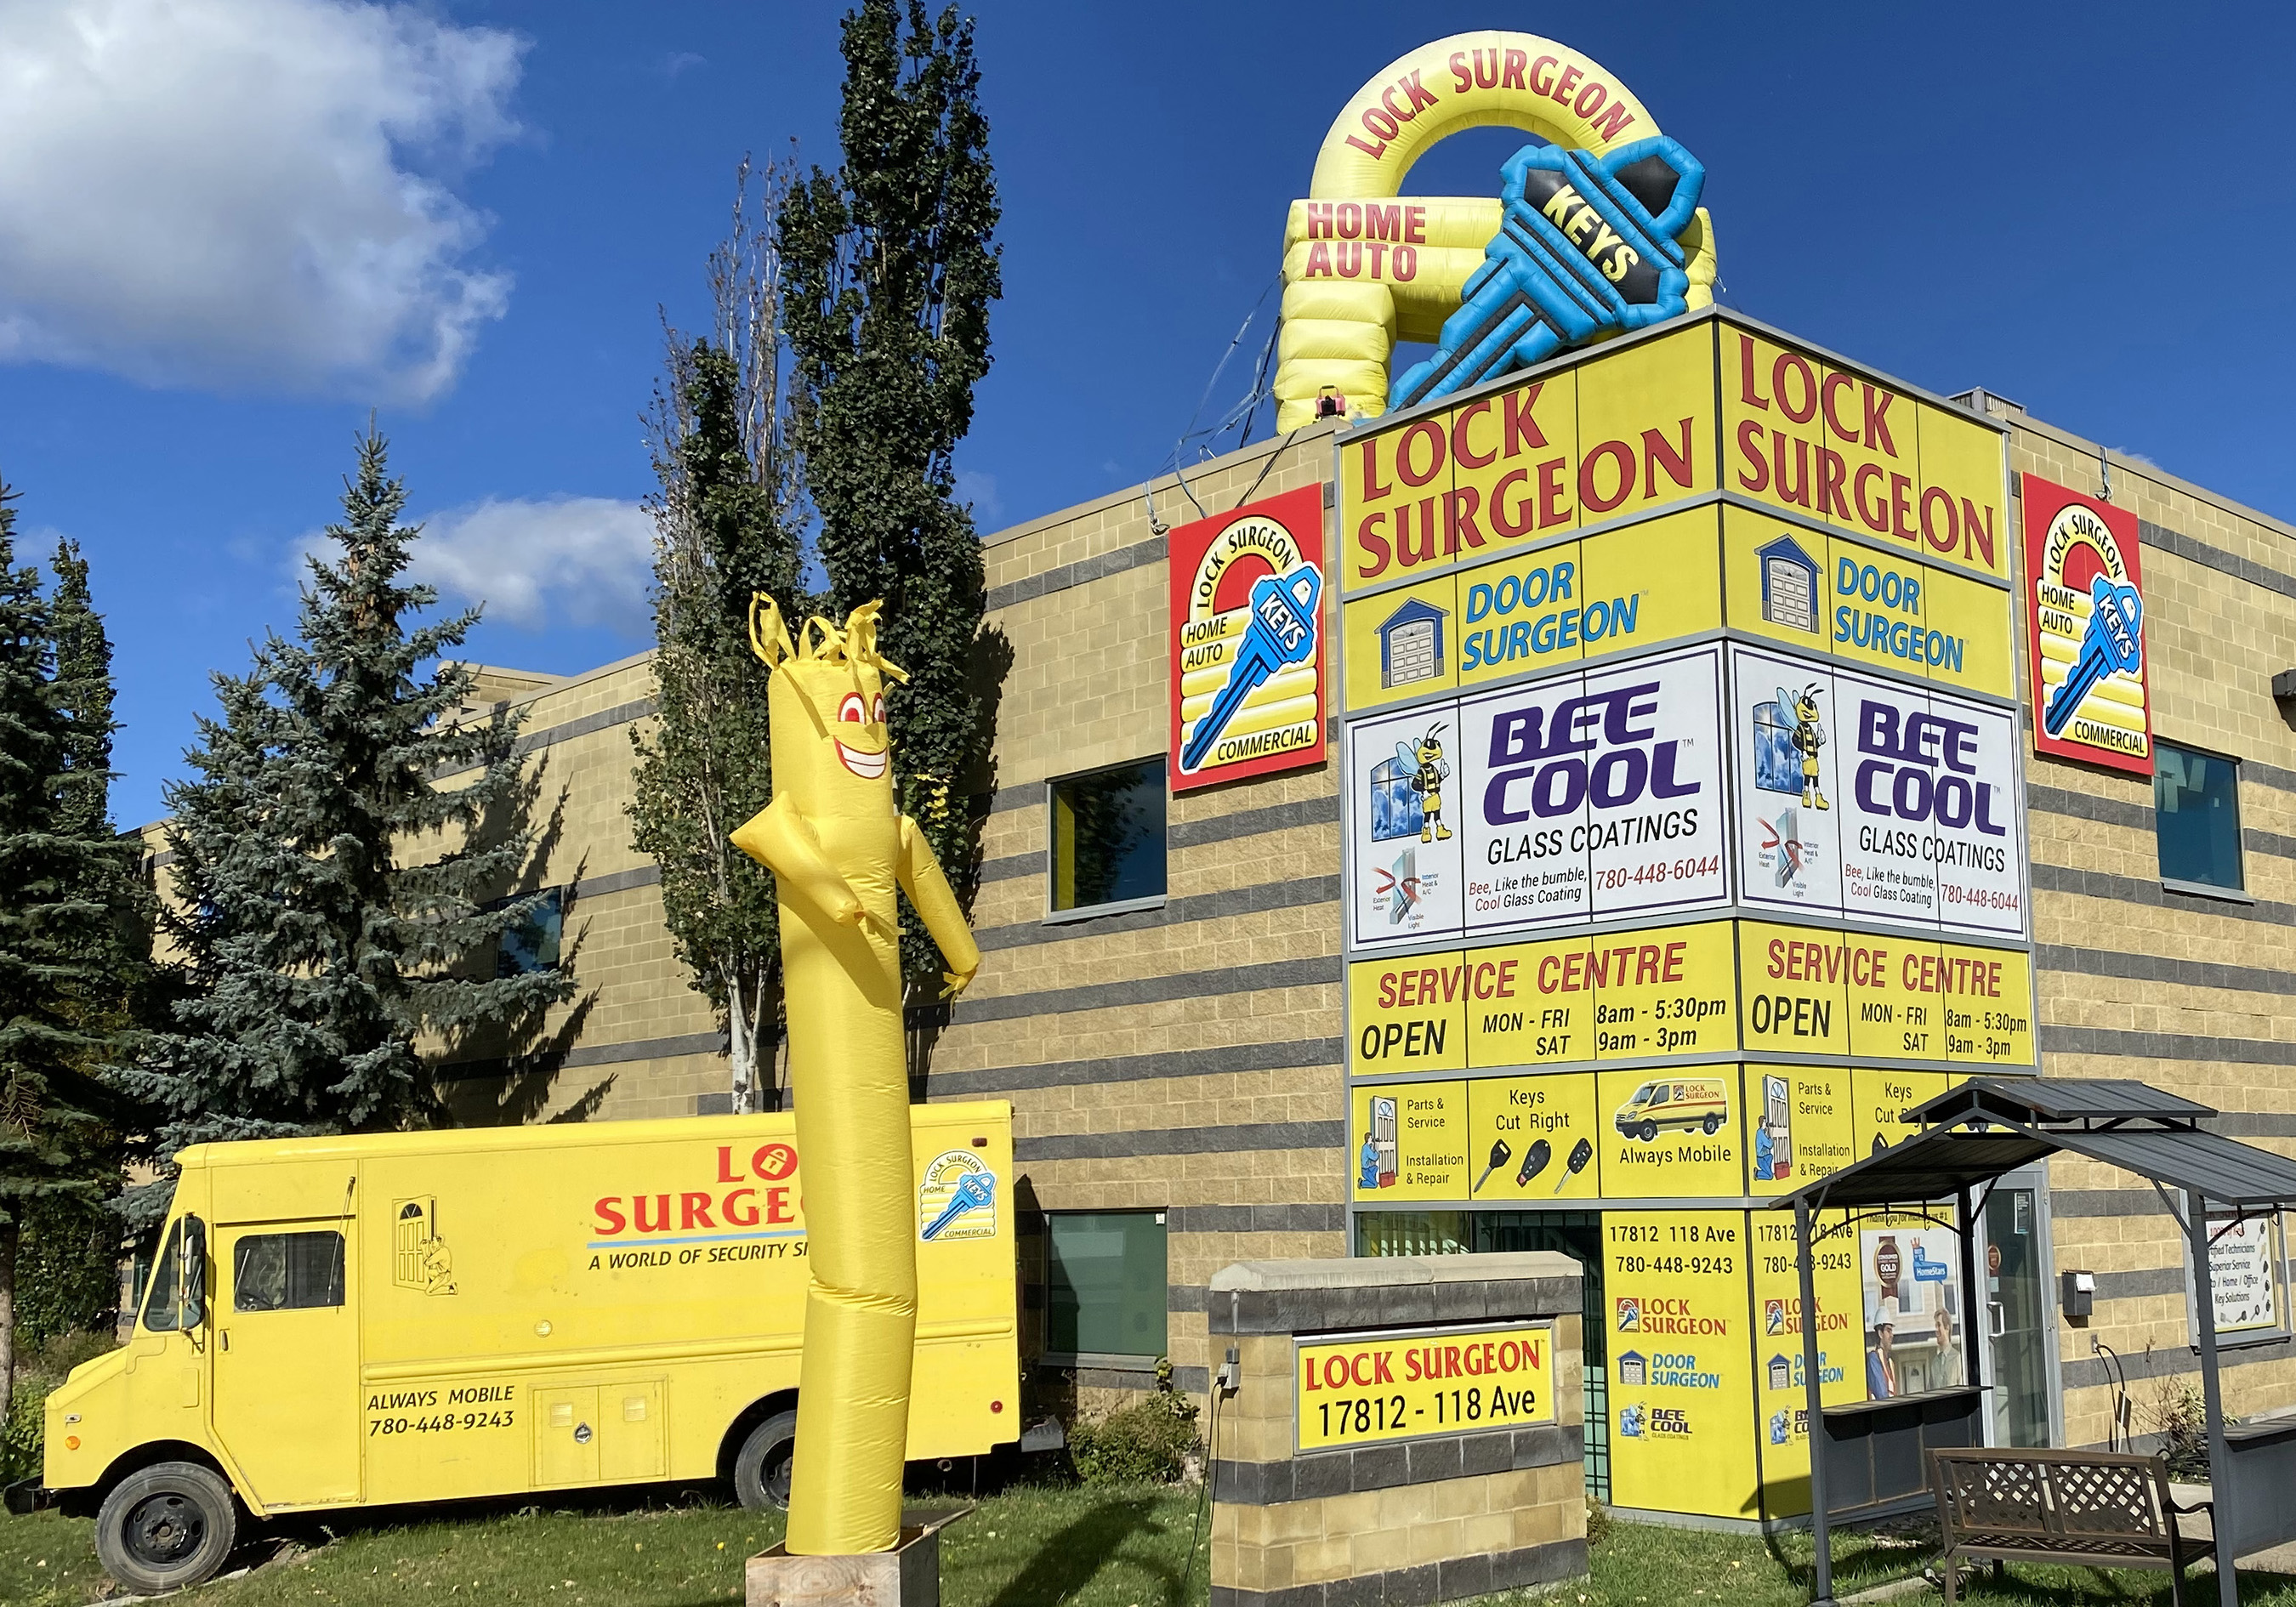 Edmonton Door Surgeon sales and service parts centre location.